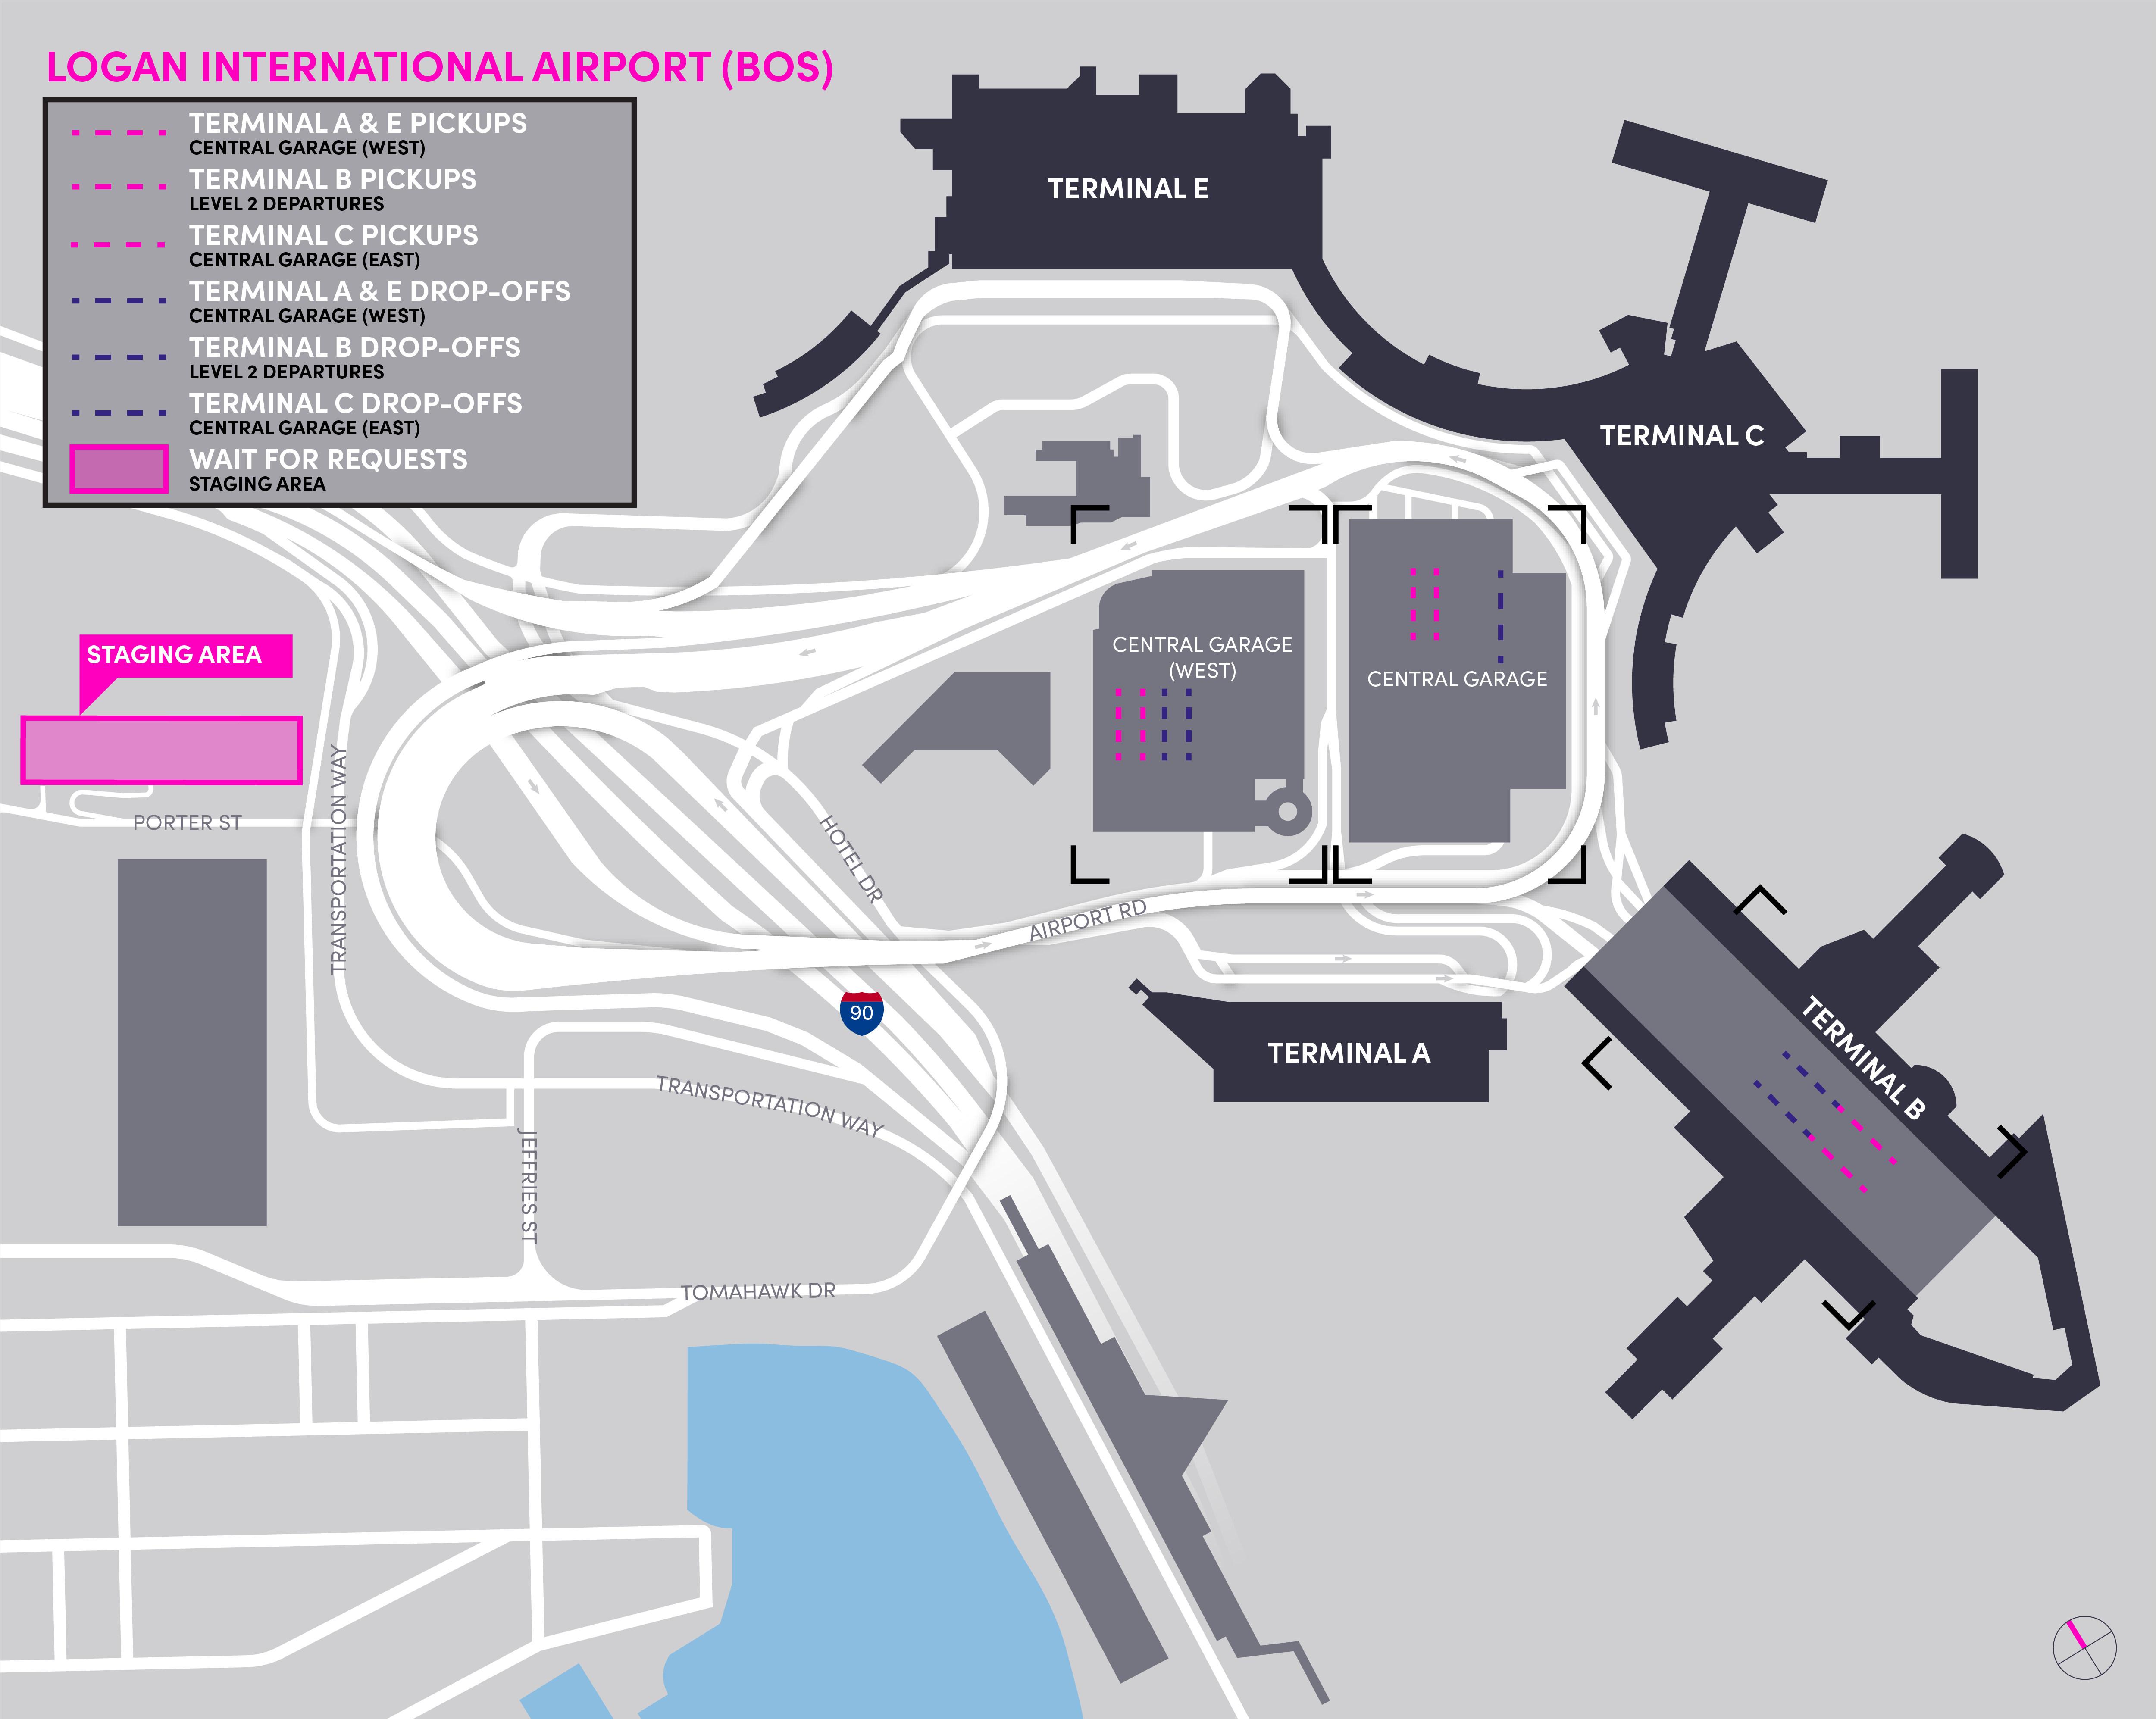 Mapa del área de espera en el Aeropuerto Internacional de Boston Logan